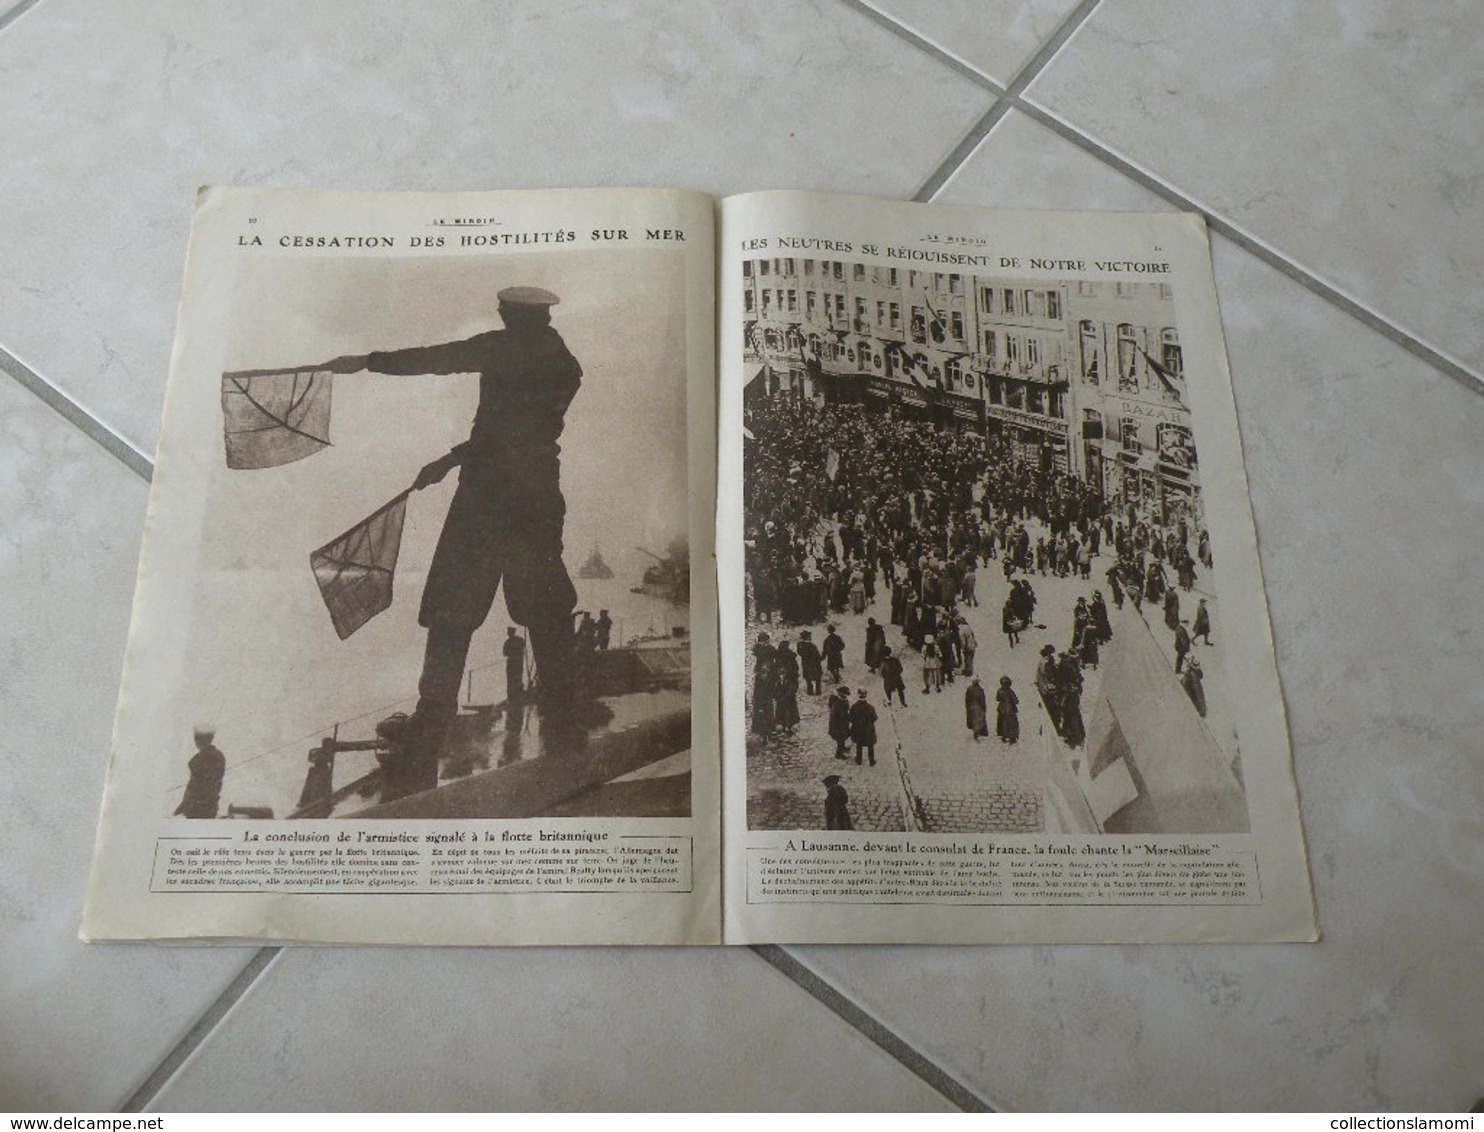 Le Miroir-la Guerre 1914-1918 (N°262) 1.12.1918 (Titres sur photos) Les infos sur la vie des soldats et civiles